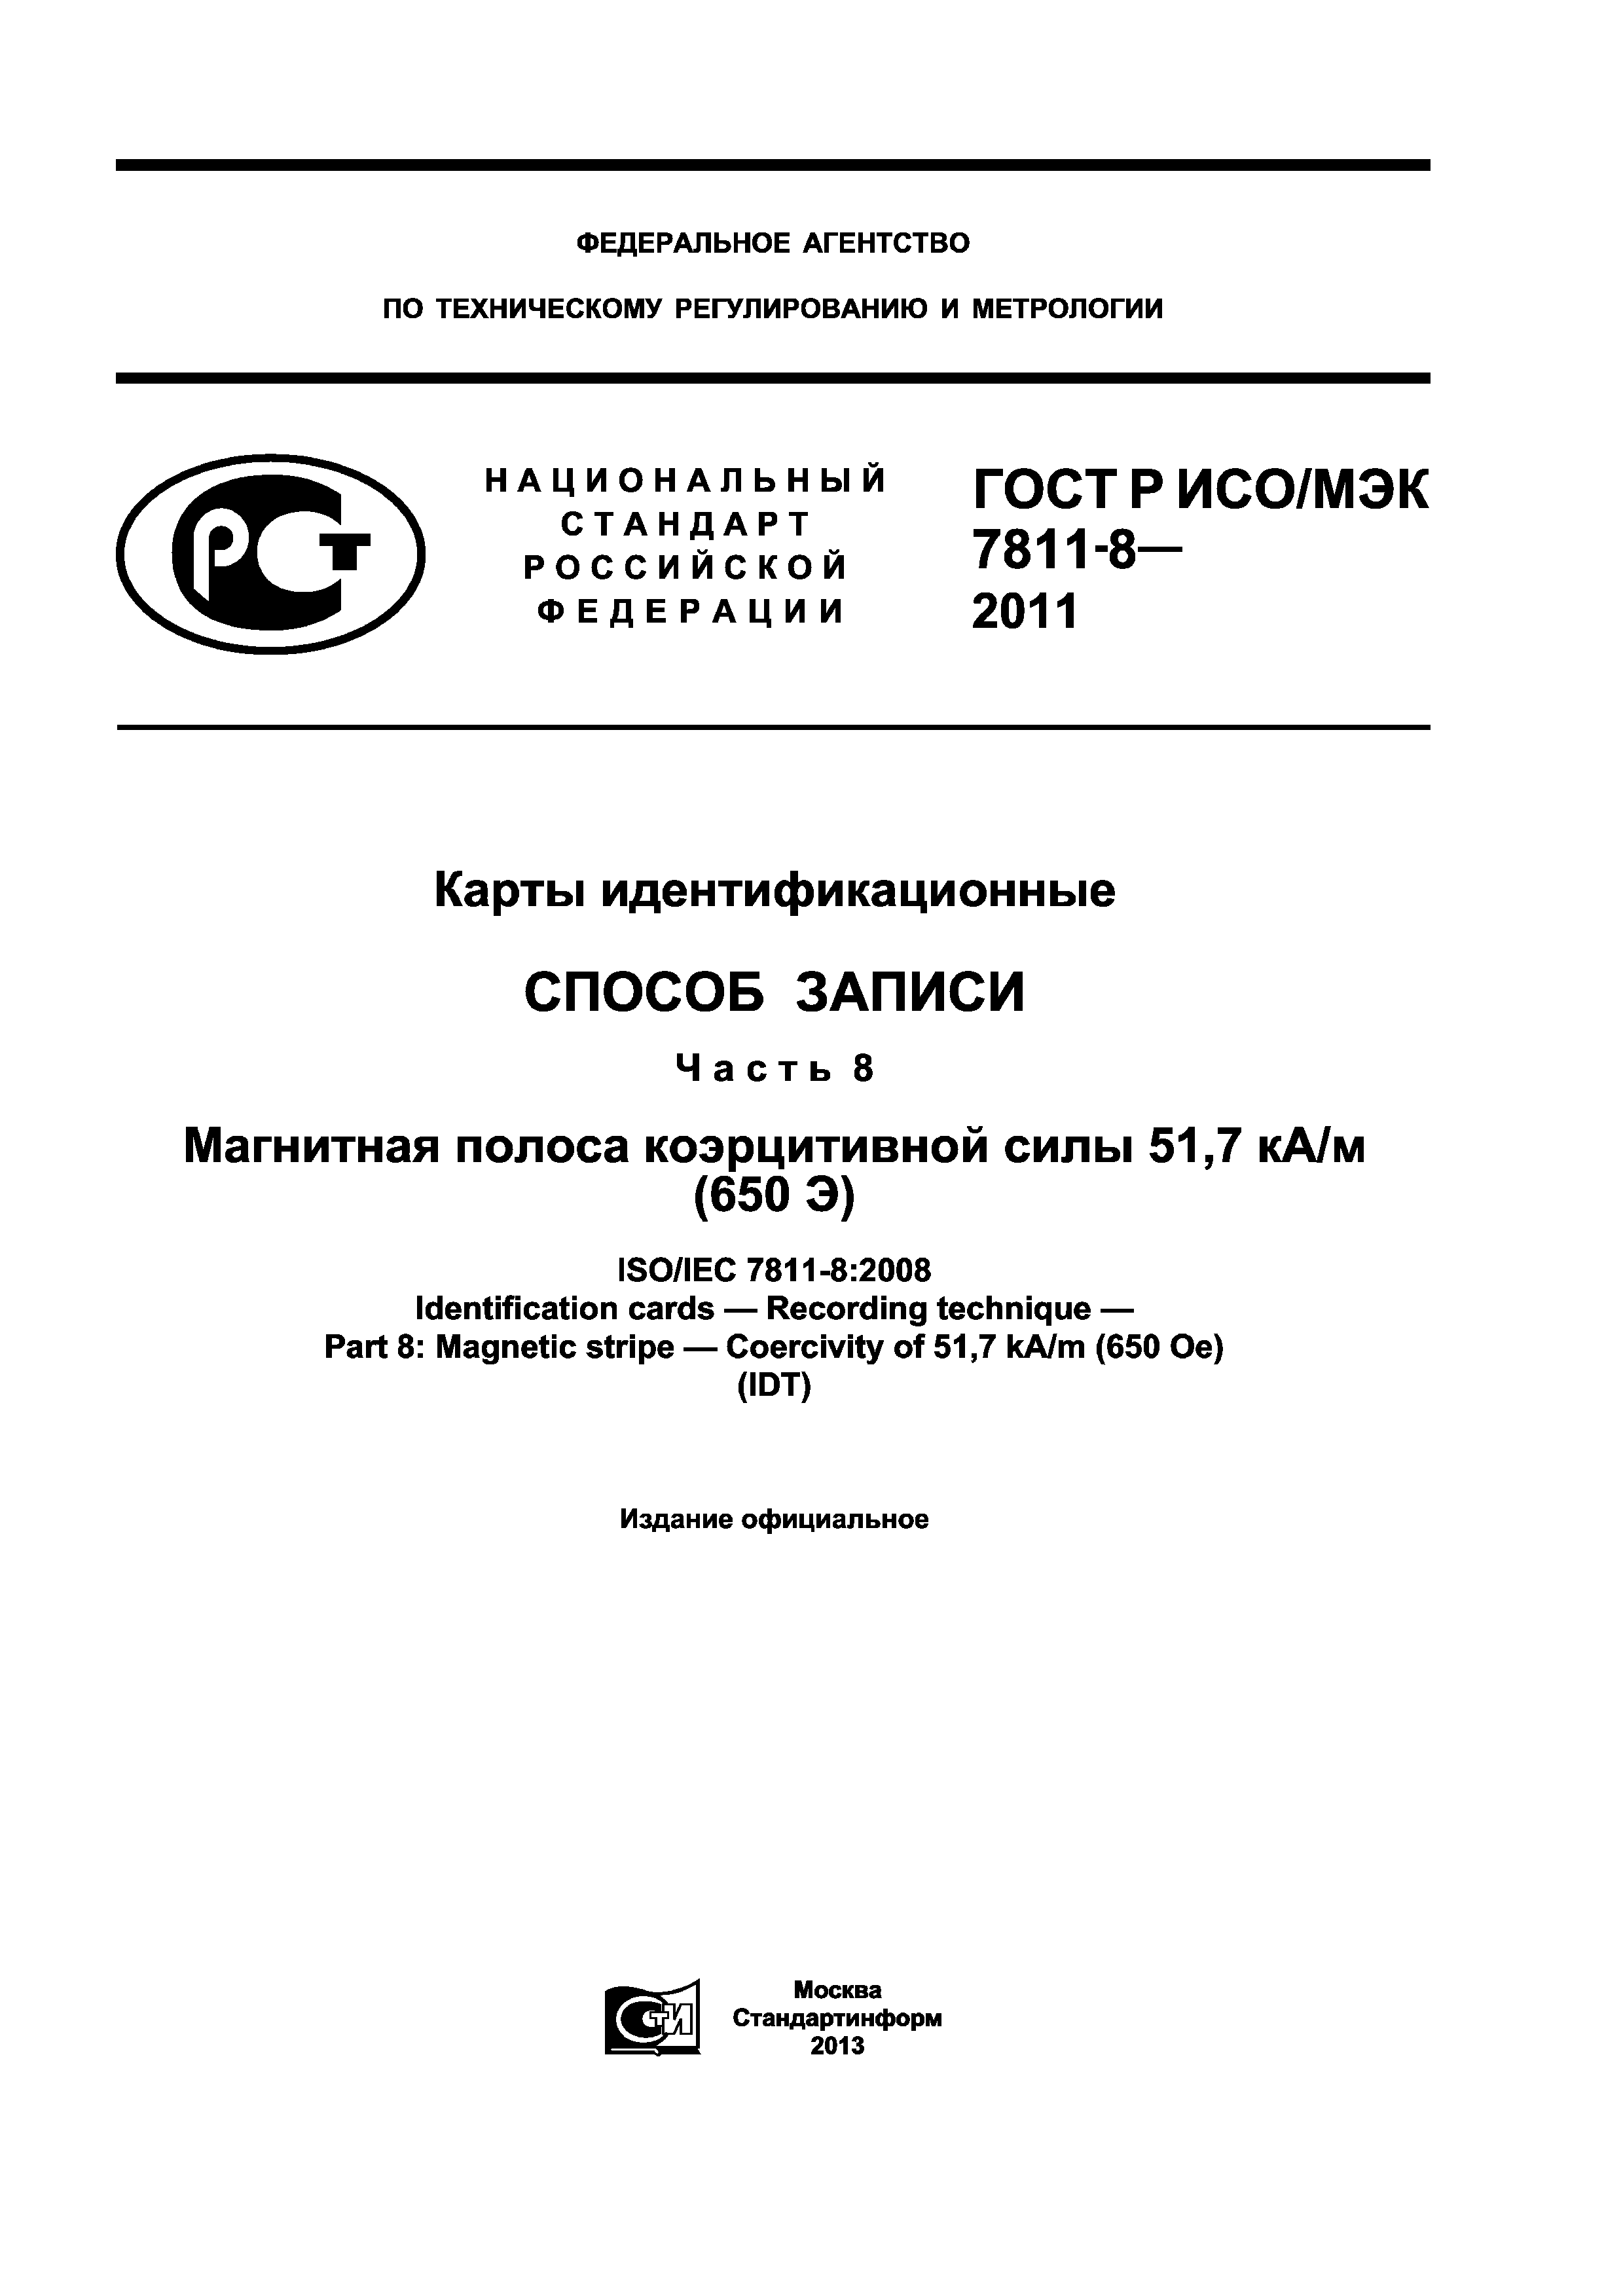 ГОСТ Р ИСО/МЭК 7811-8-2011